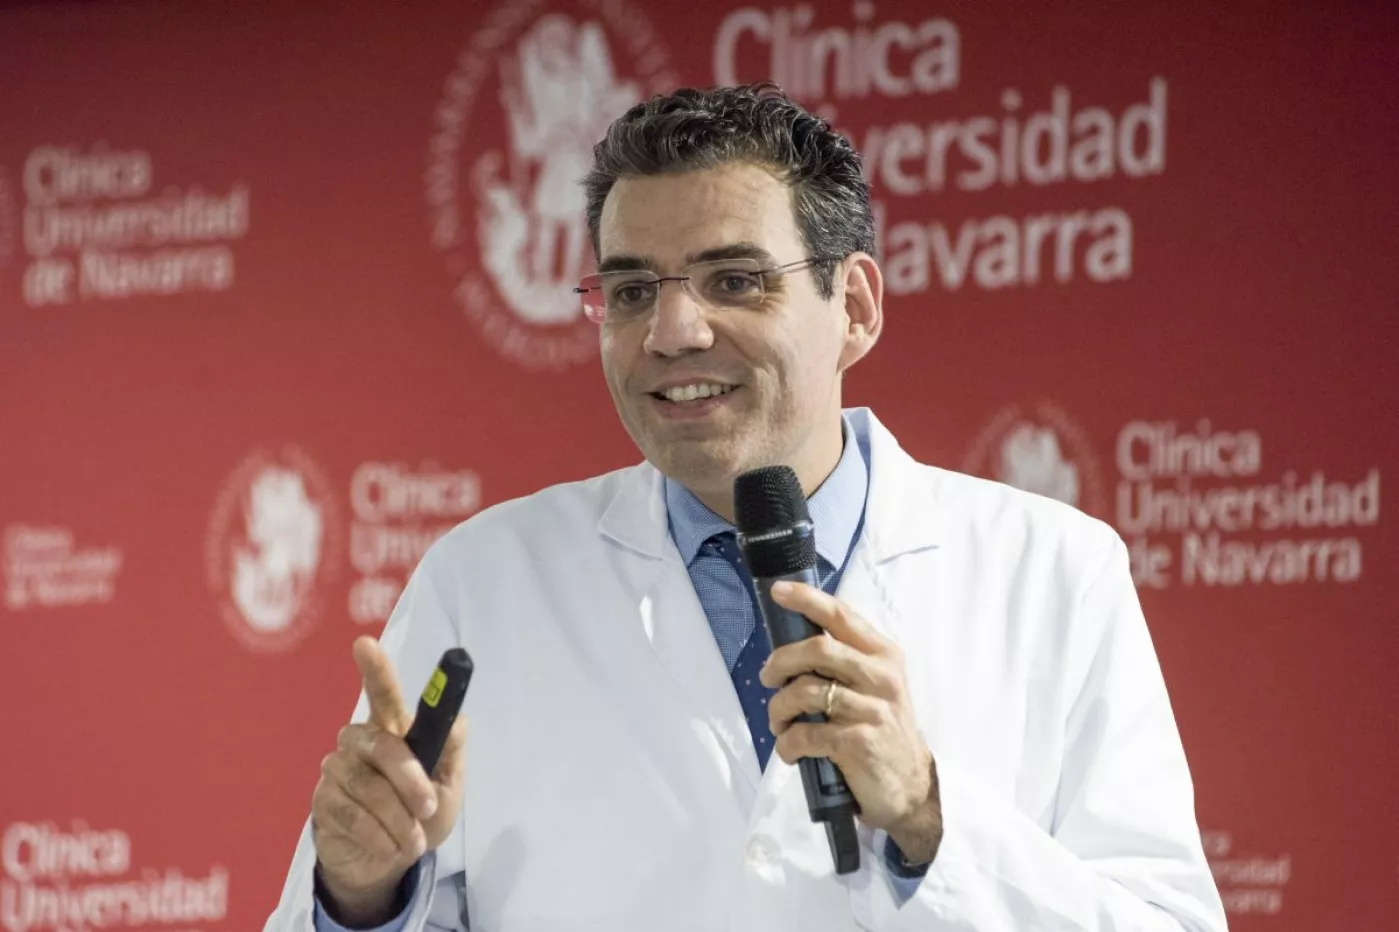 Ignacio Gil Bazo, codirector de Oncología de la CUN, en Pamplona, explica el desarrollo de este proyecto internacional. FOTO: CUN. 